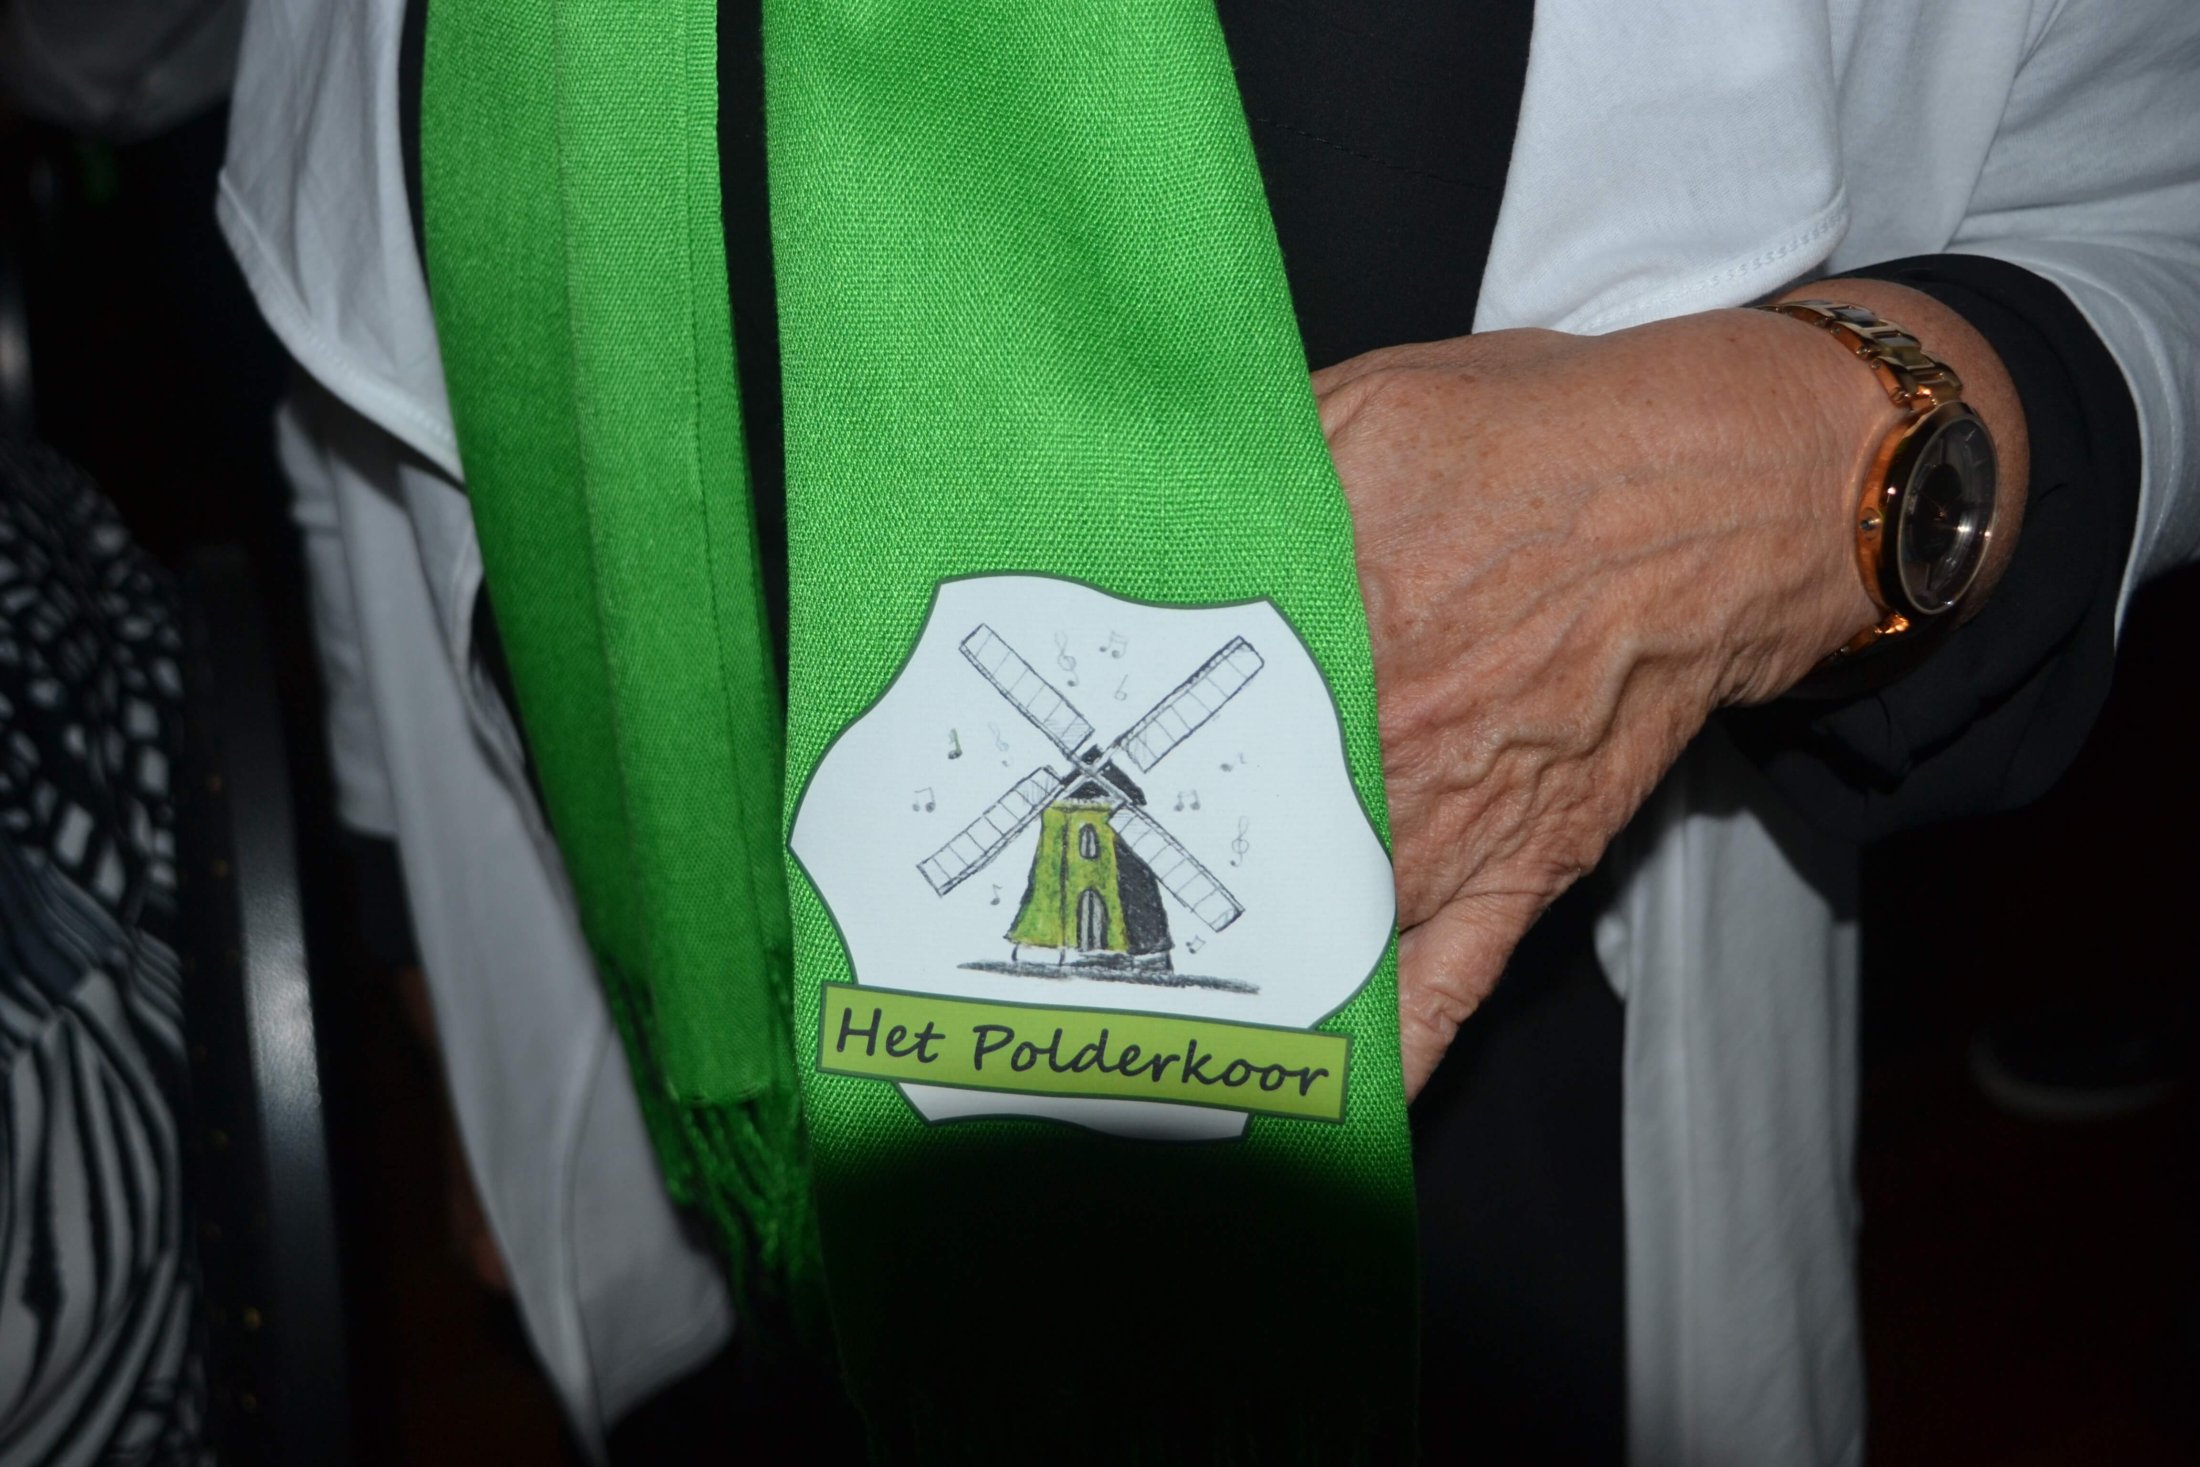 Onze sjaal met logo